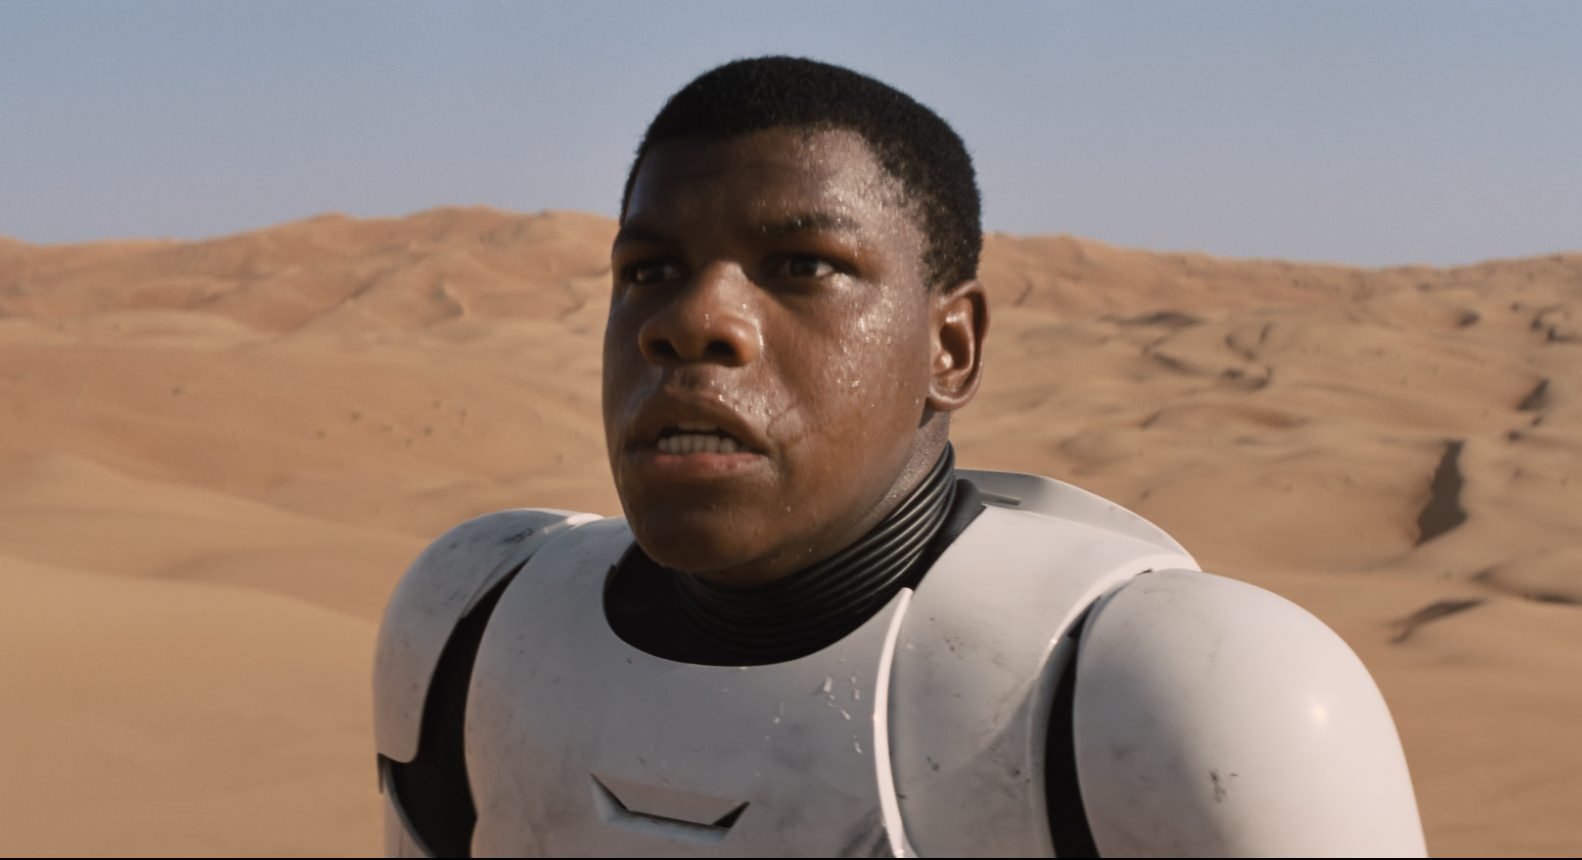 Star Wars: The Force Awakens John Boyega